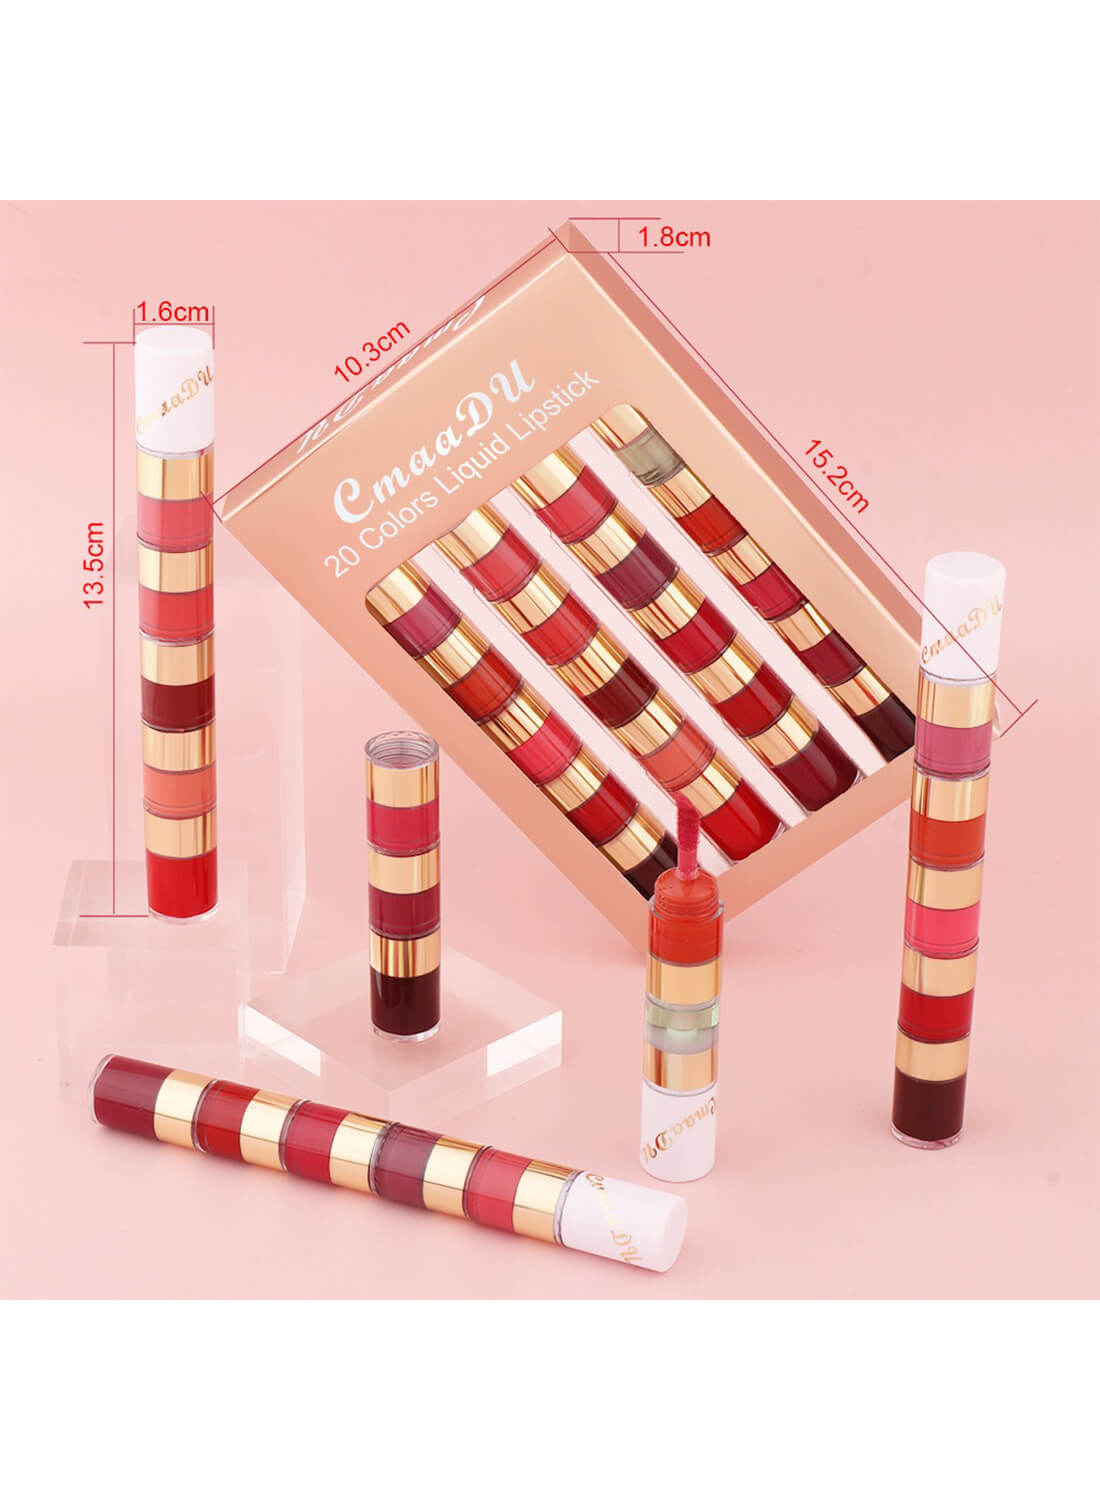 20 Colors Matte Lip Gloss Set, Makeup Gift Set for Girls Women